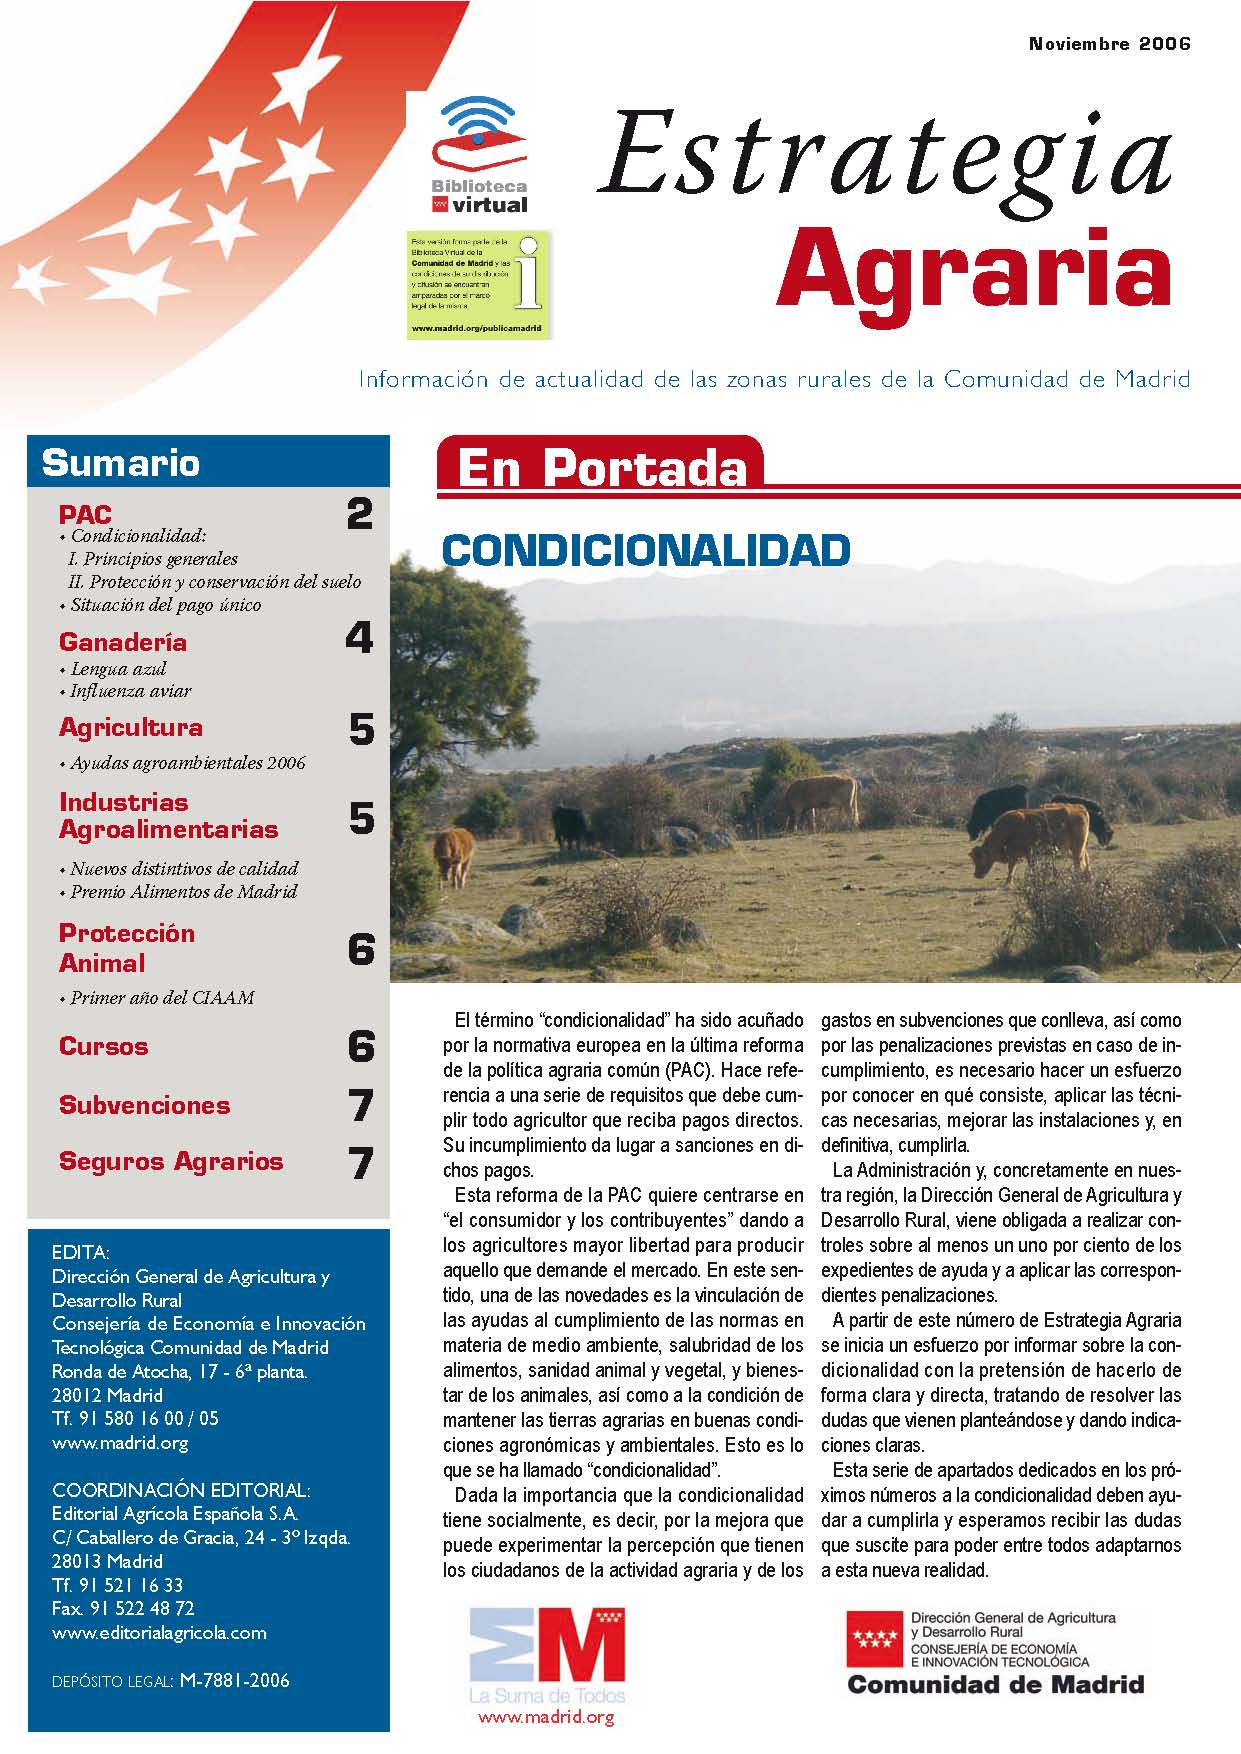 Portada de Revista de Estrategia Agraria Noviembre 2006